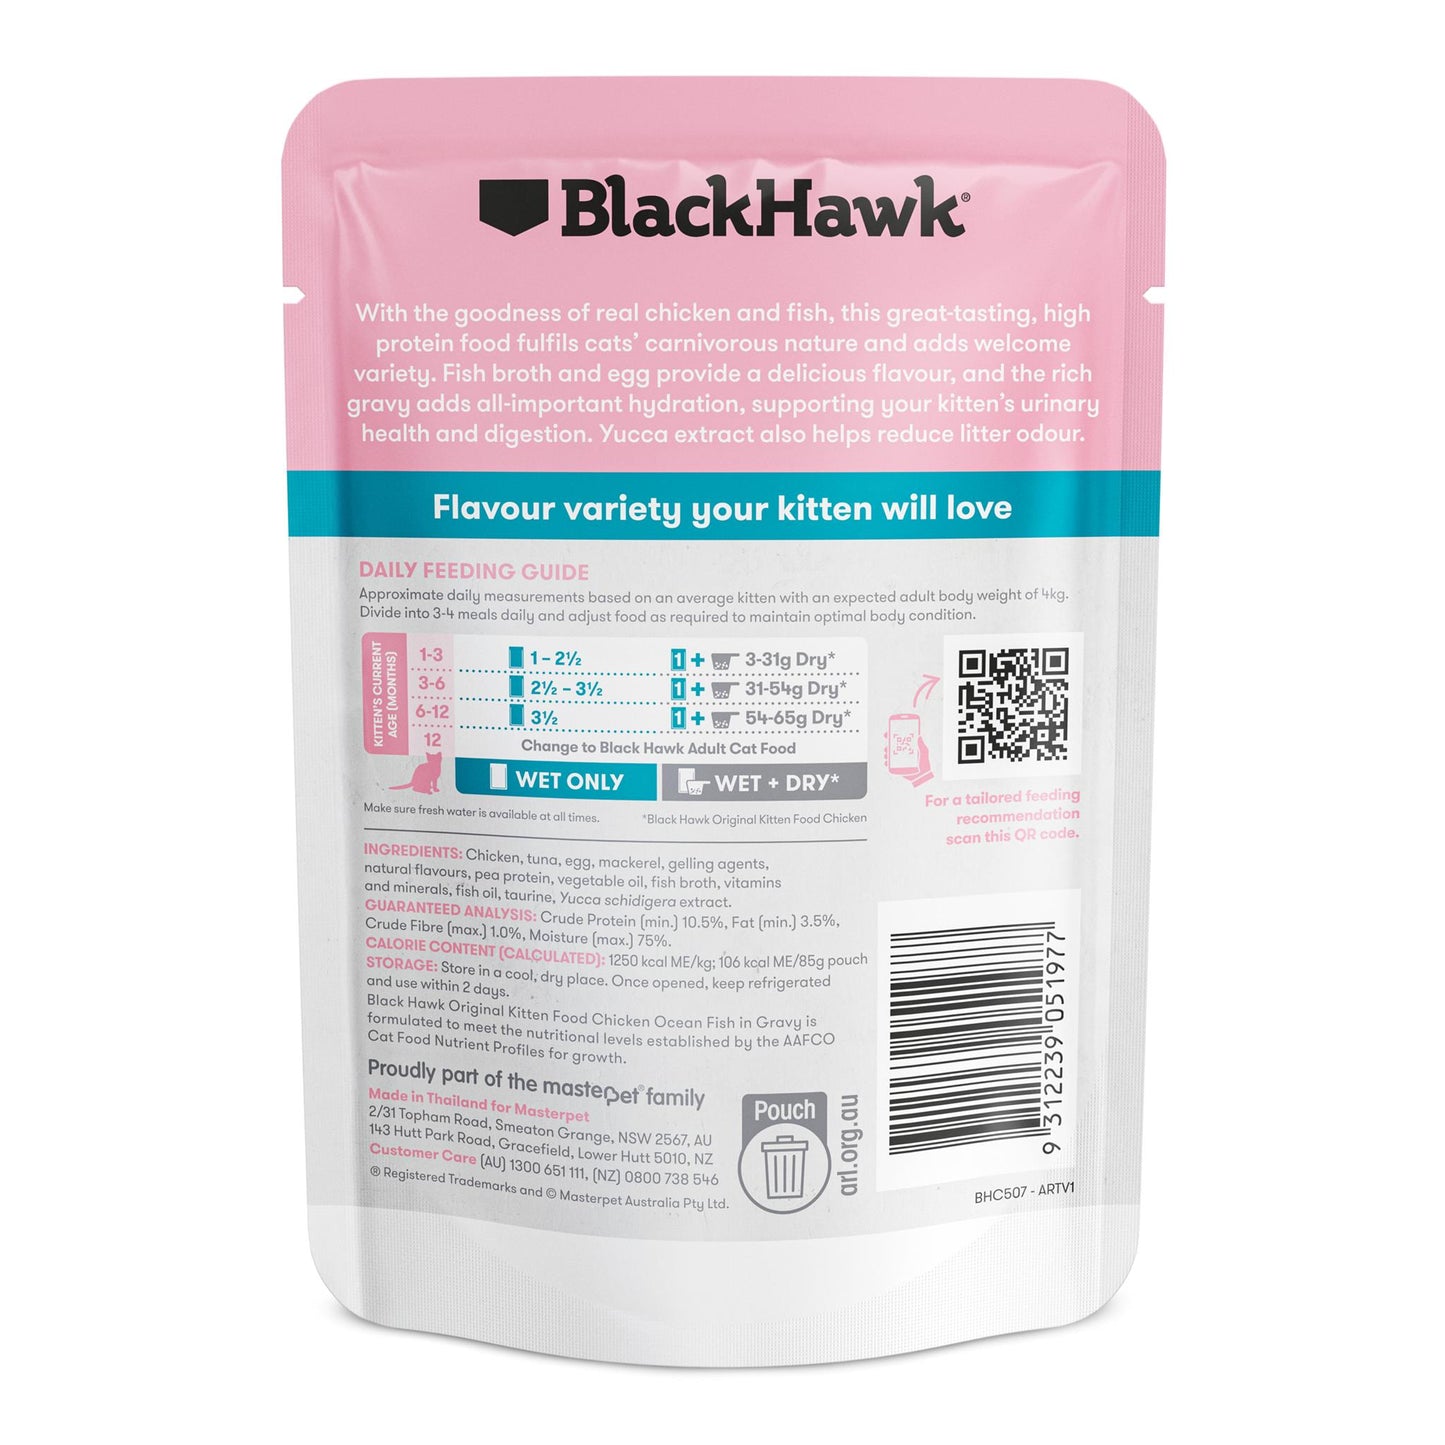 BlackHawk (NEW): Kitten Original Chicken, Fish, Gravy Pouch